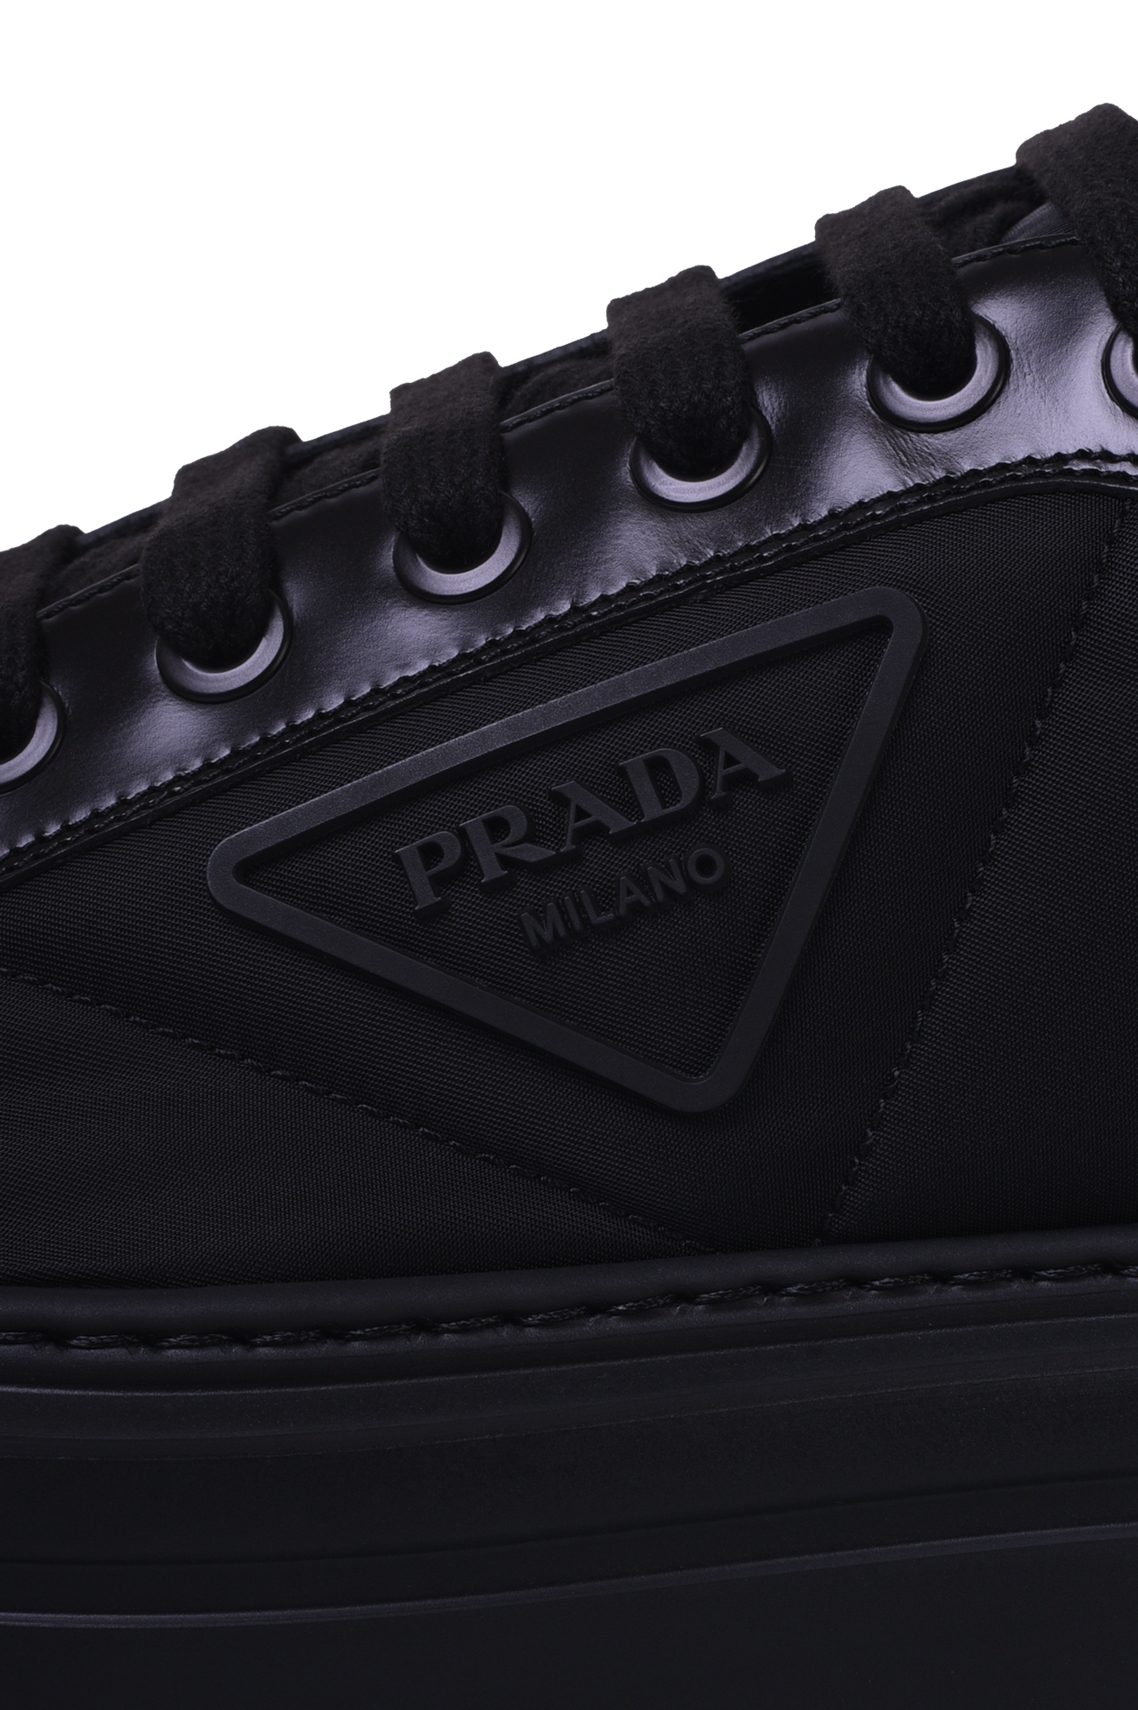 Ботинки PRADA 2EG376 3LF5, цвет: Черный, Мужской